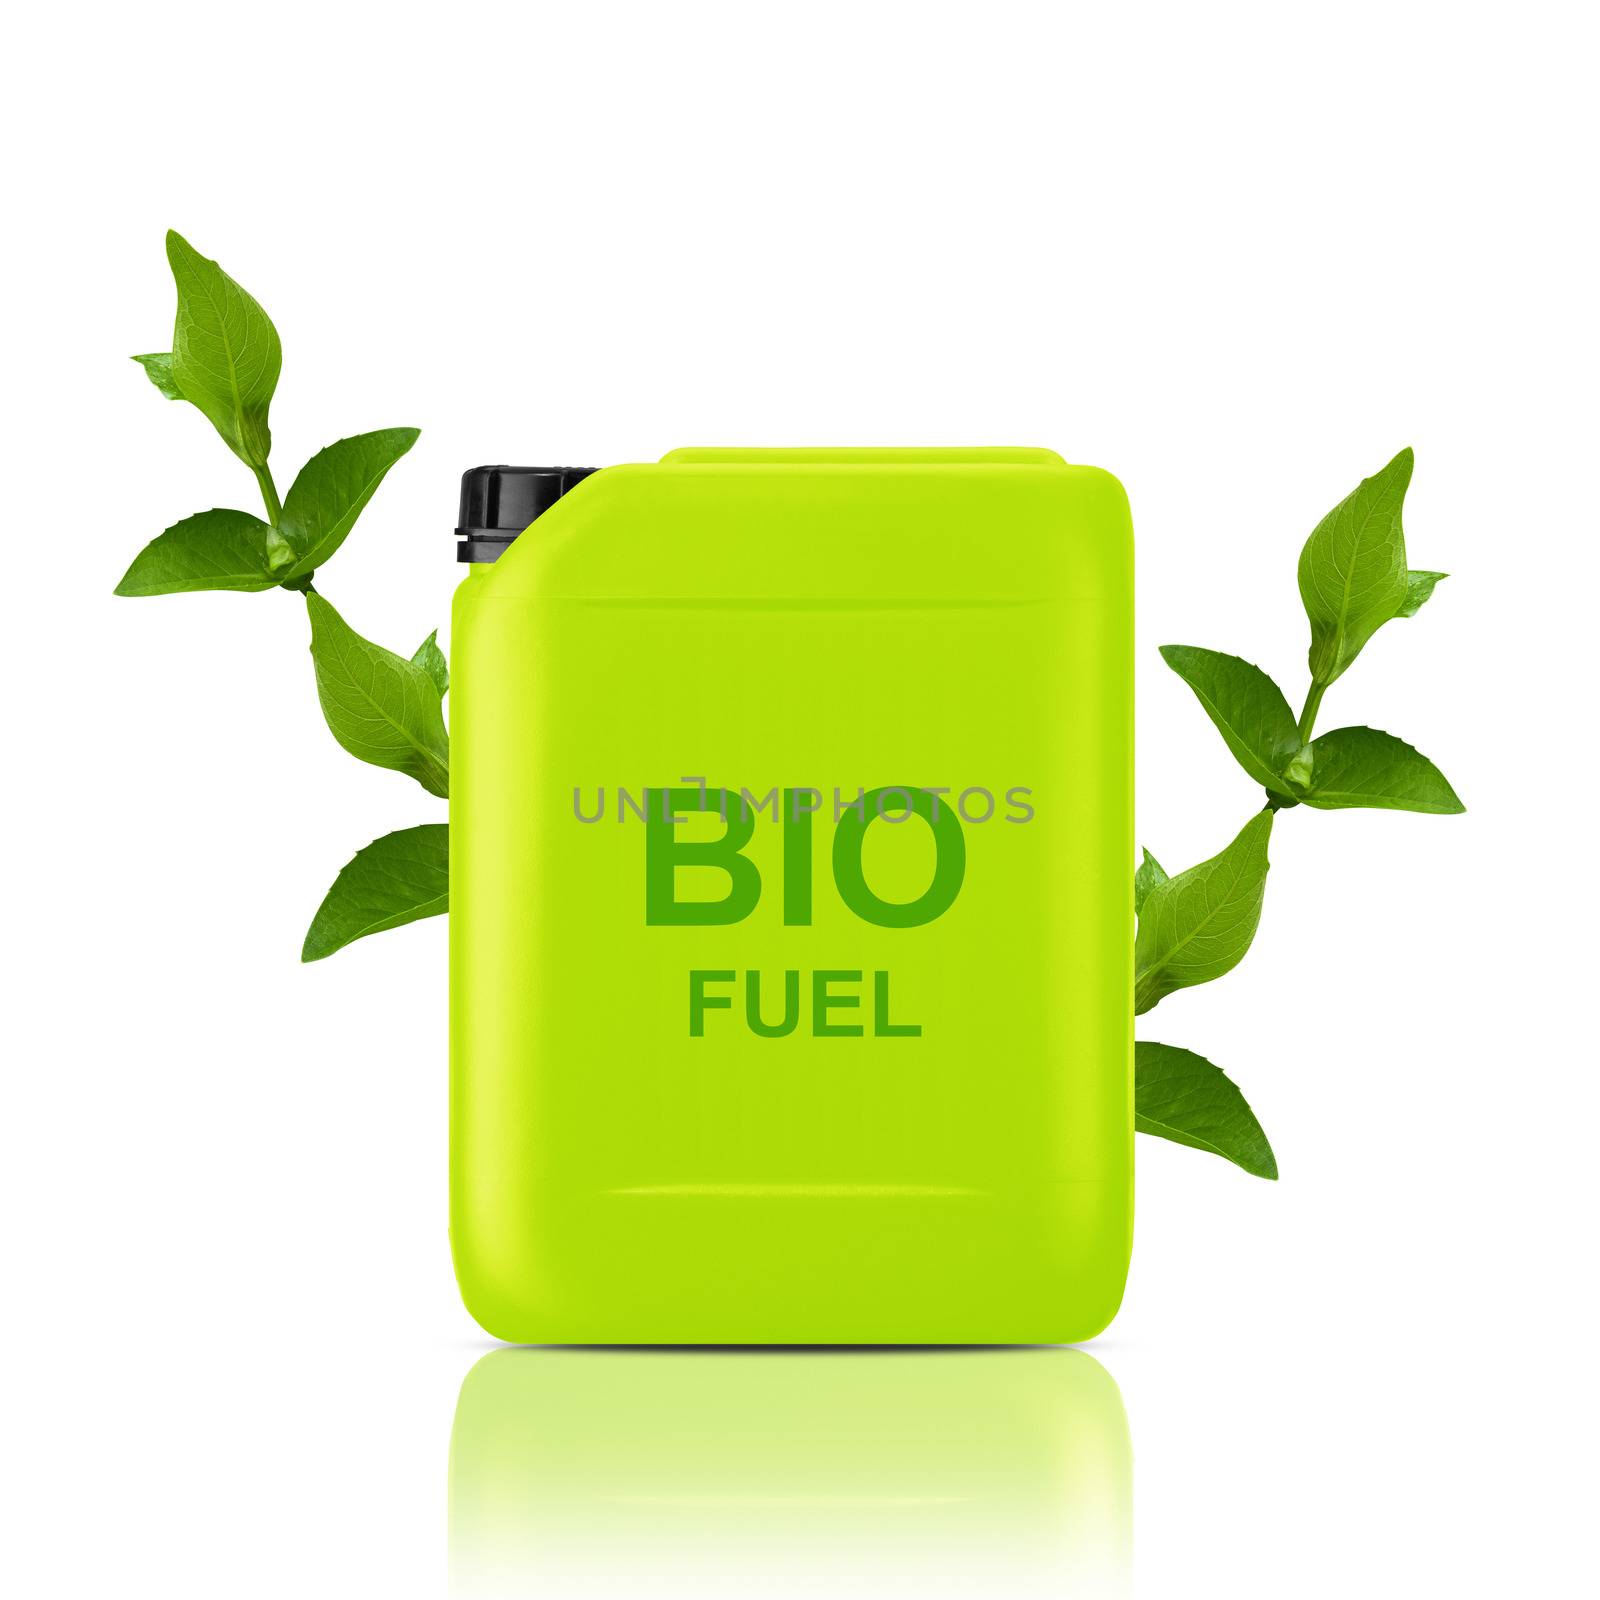 bio fuel gallon by designsstock